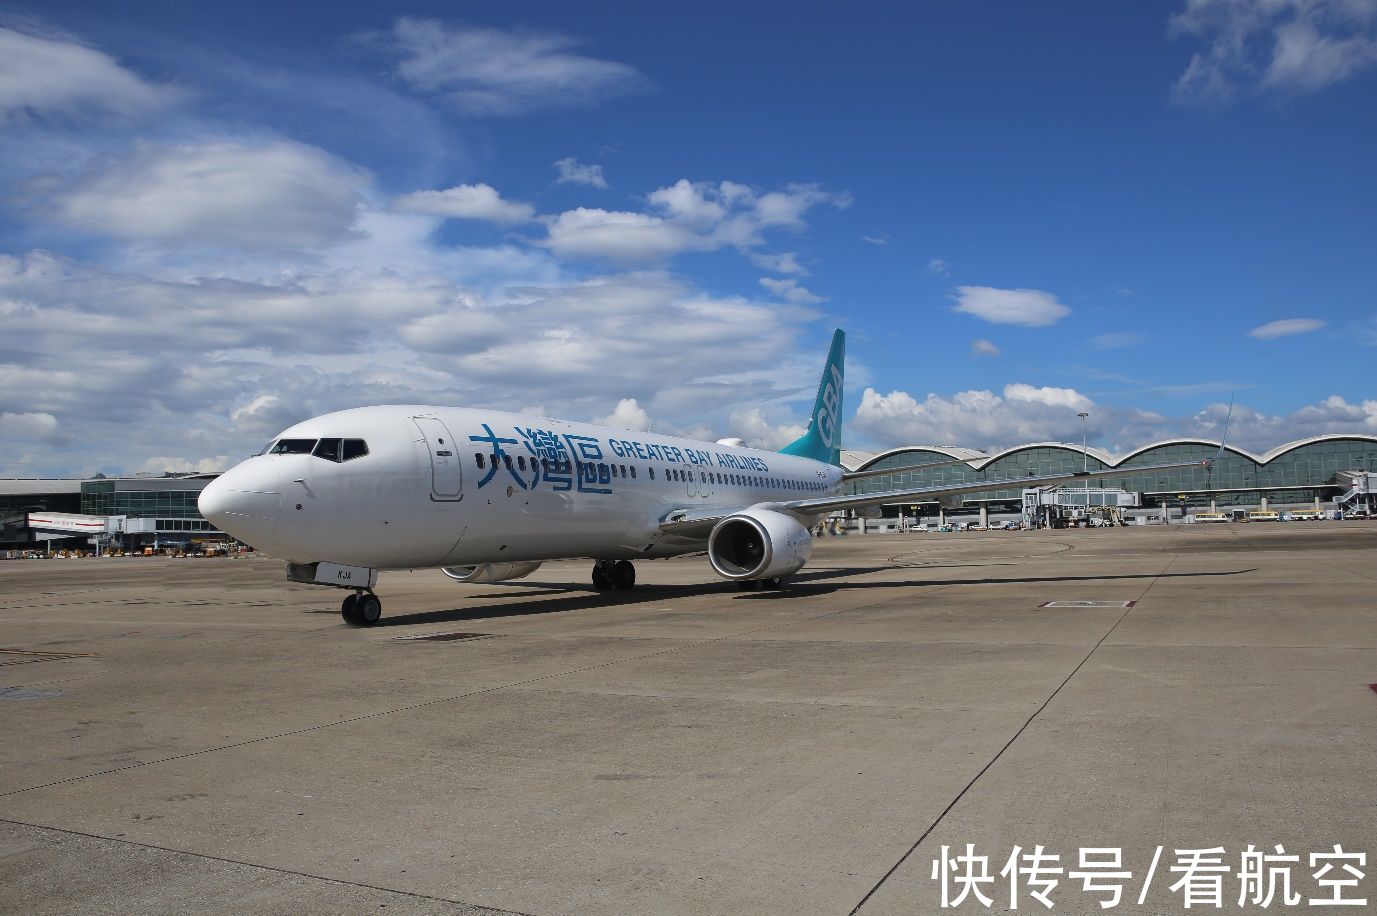 大湾区航空与Amadeus携手扩大其在亚太地区的业务增长